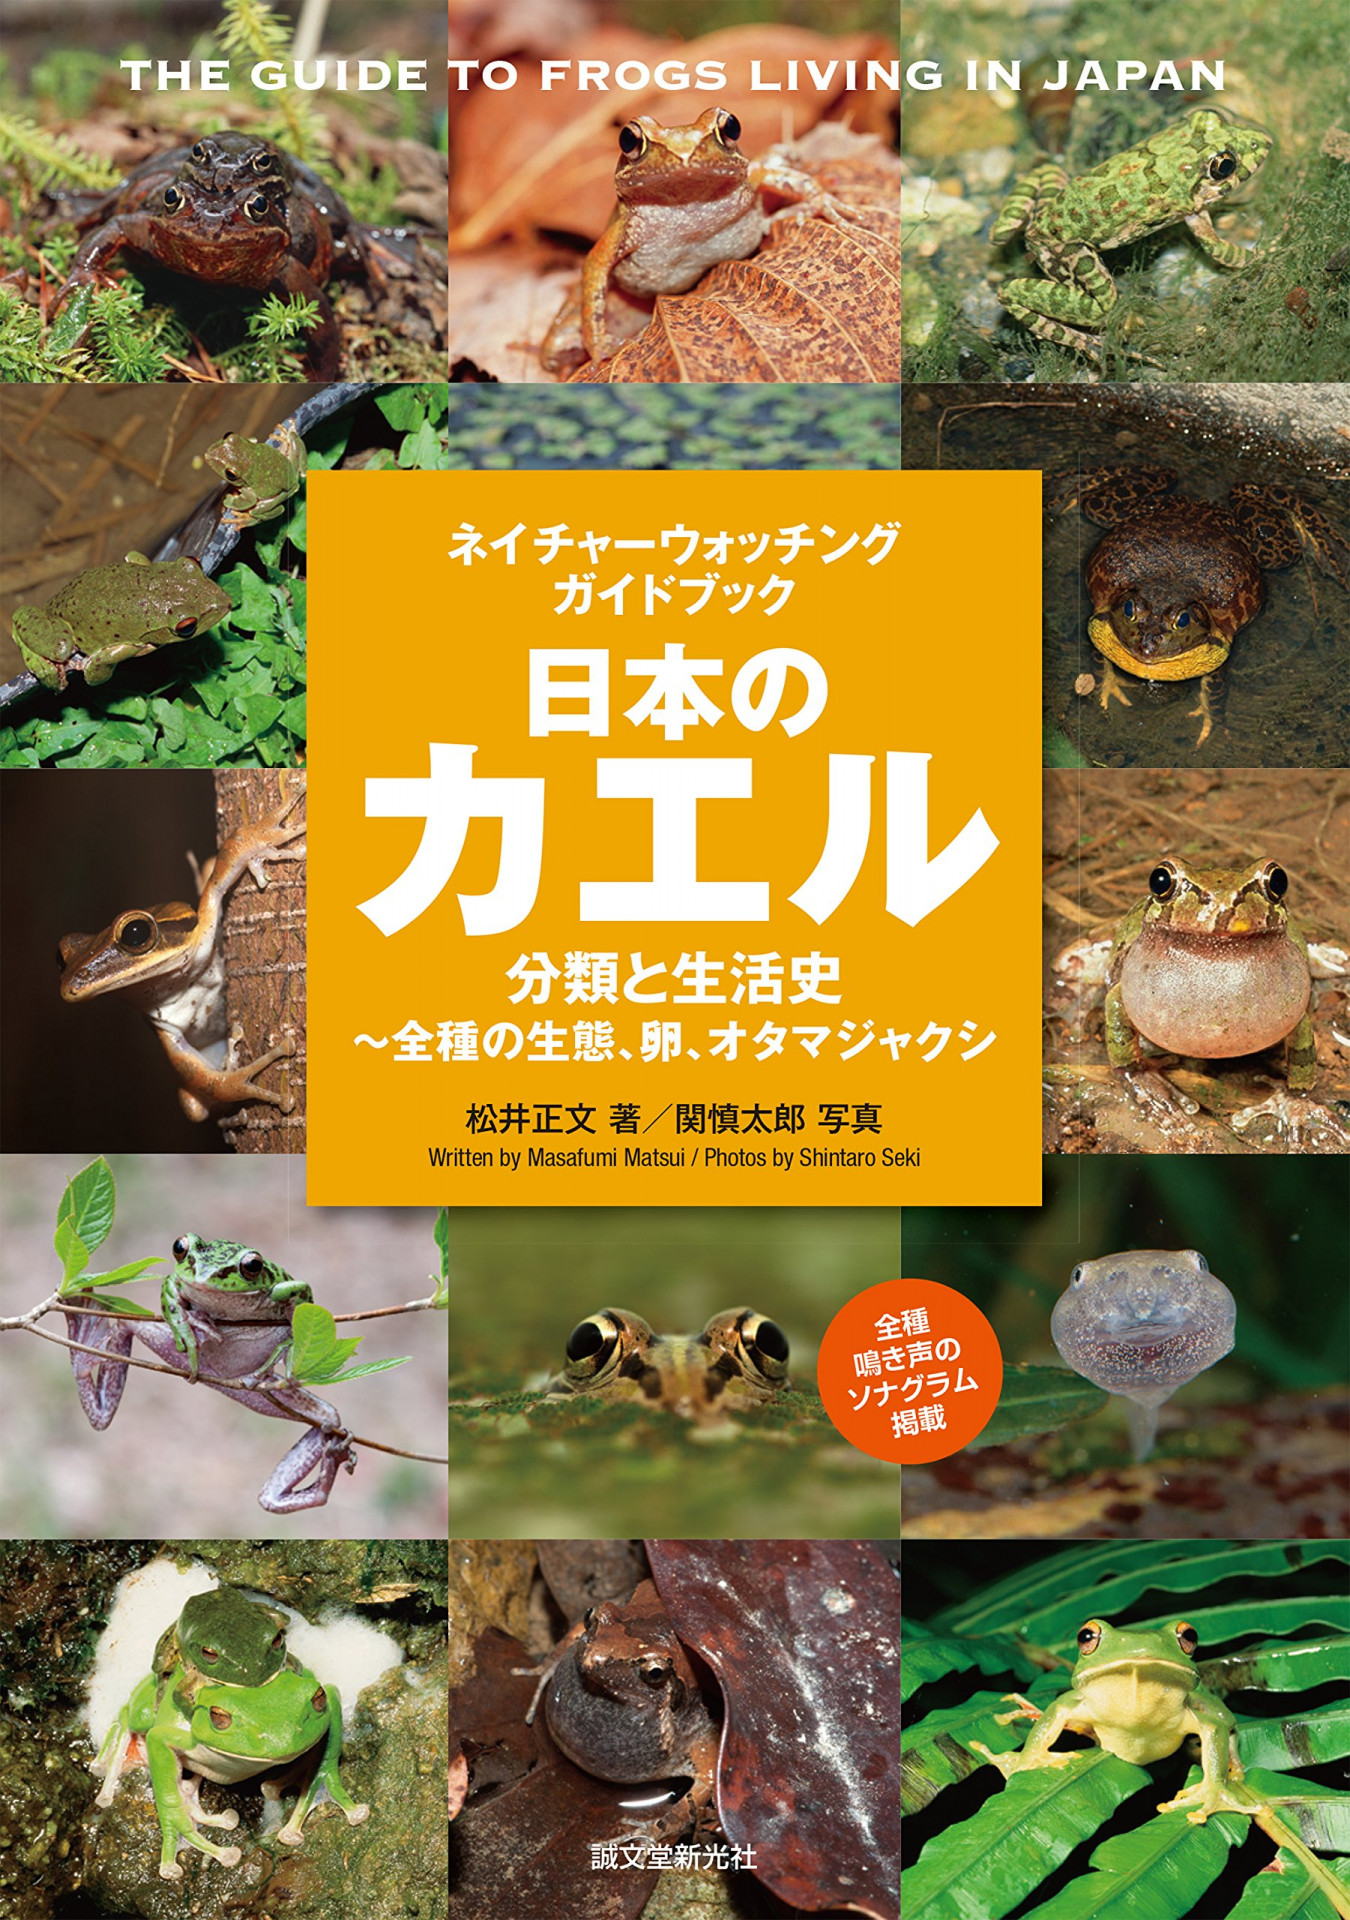 カエルの図鑑　日本のカエル 分類と生活史〜全種の生態、卵、オタマジャクシ